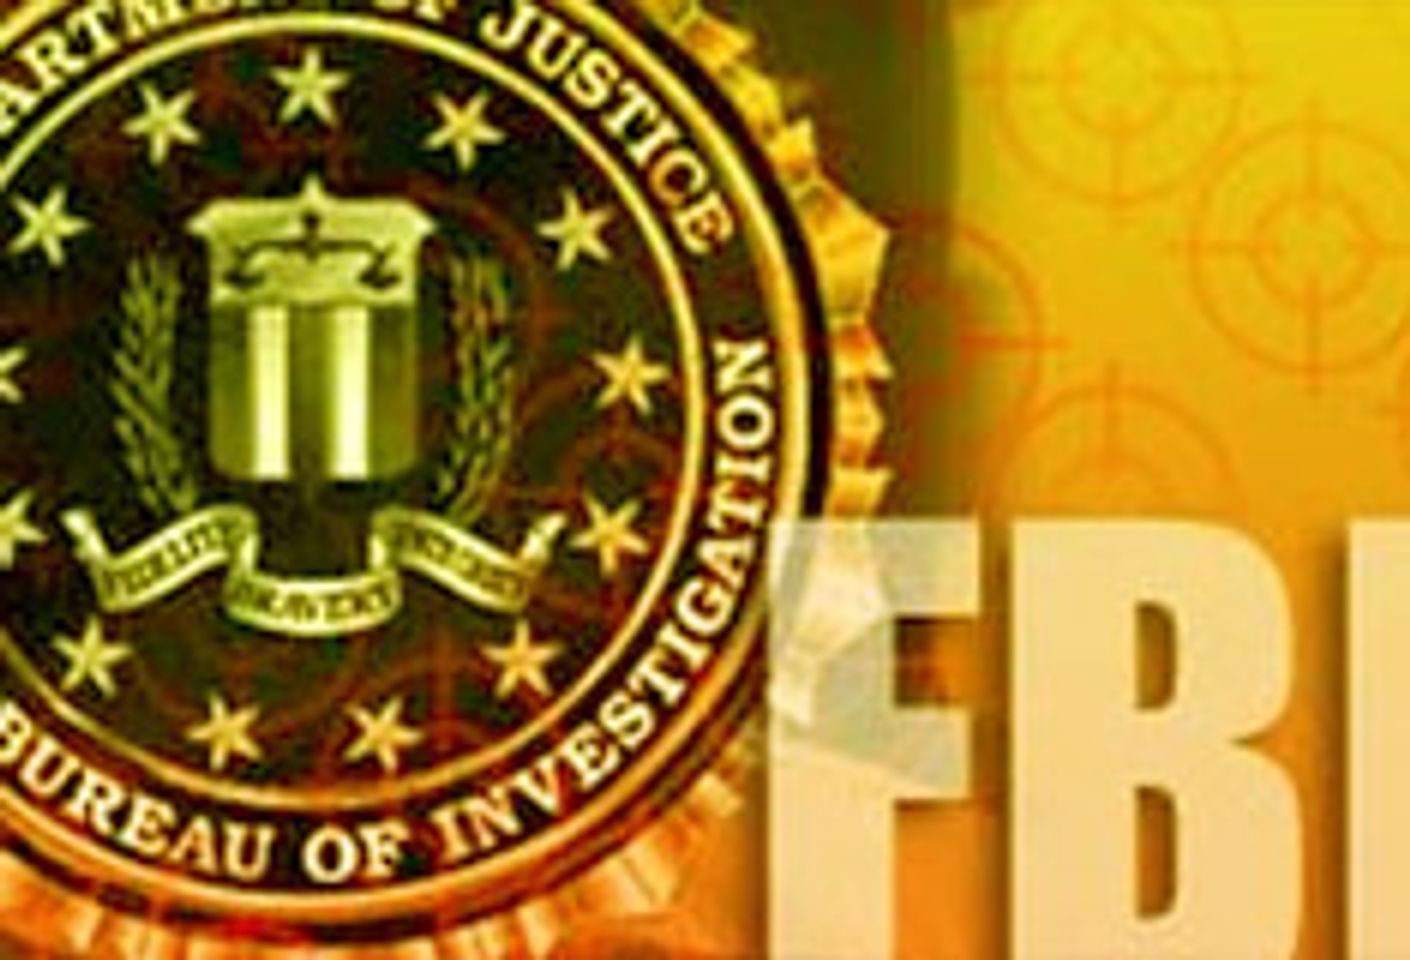 FBI Visits K-Beech Again